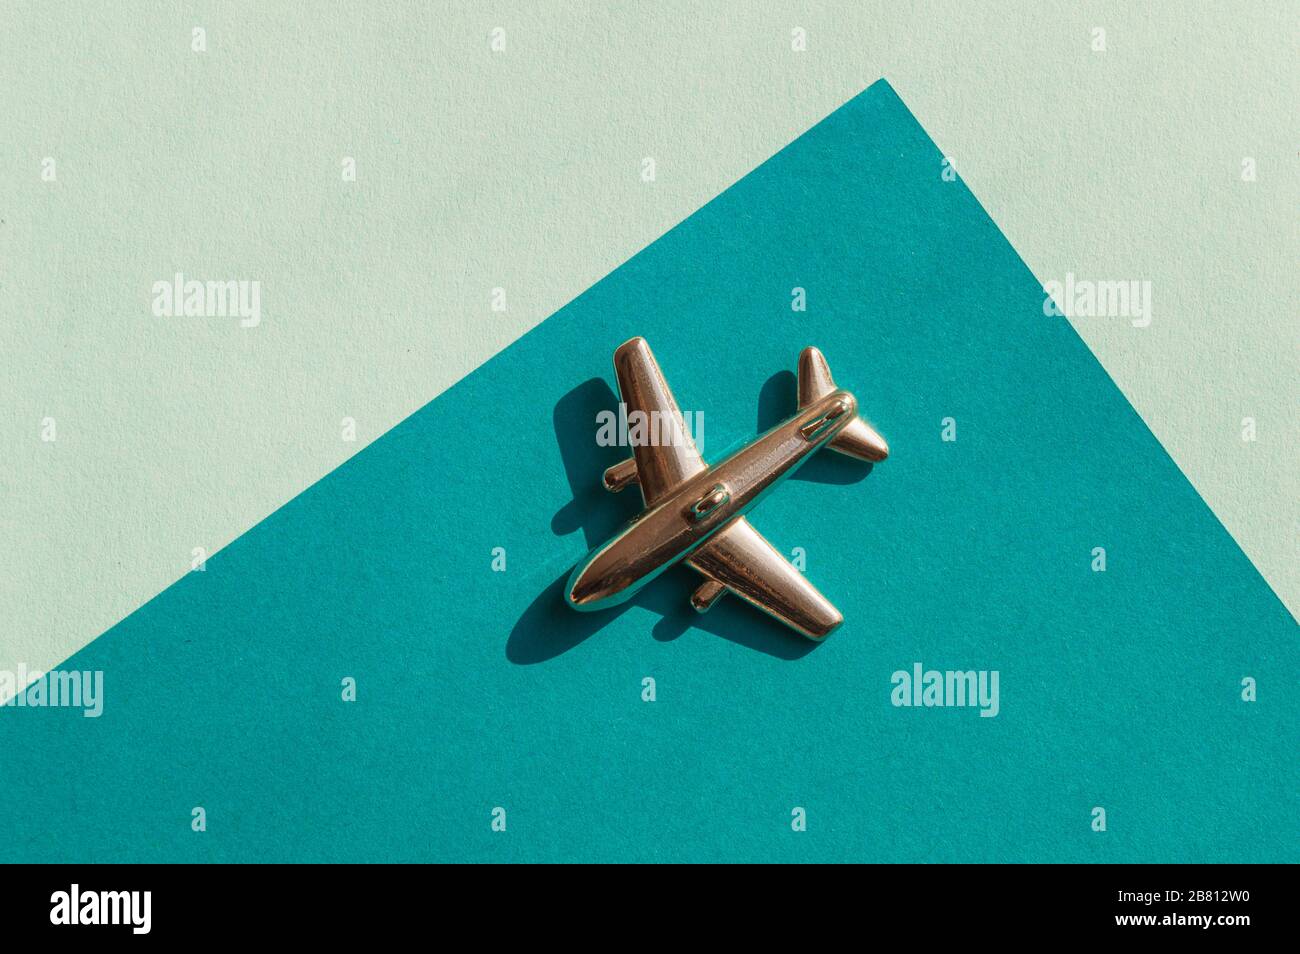 Metallfigur des kleinen Flugzeugs auf dem Turqouise- und hellblauen Geometriehintergrund. Flatlay, Draufsicht, Layout. Luftfahrtindustrie Stockfoto